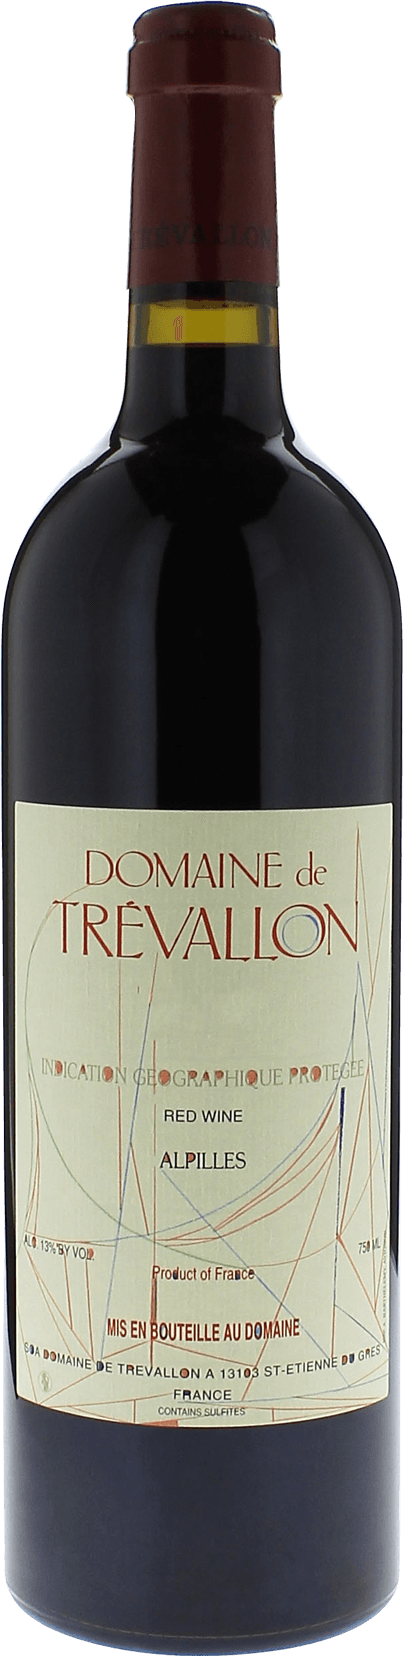 Domaine de trevallon rouge 2020  IGP Alpilles, Provence